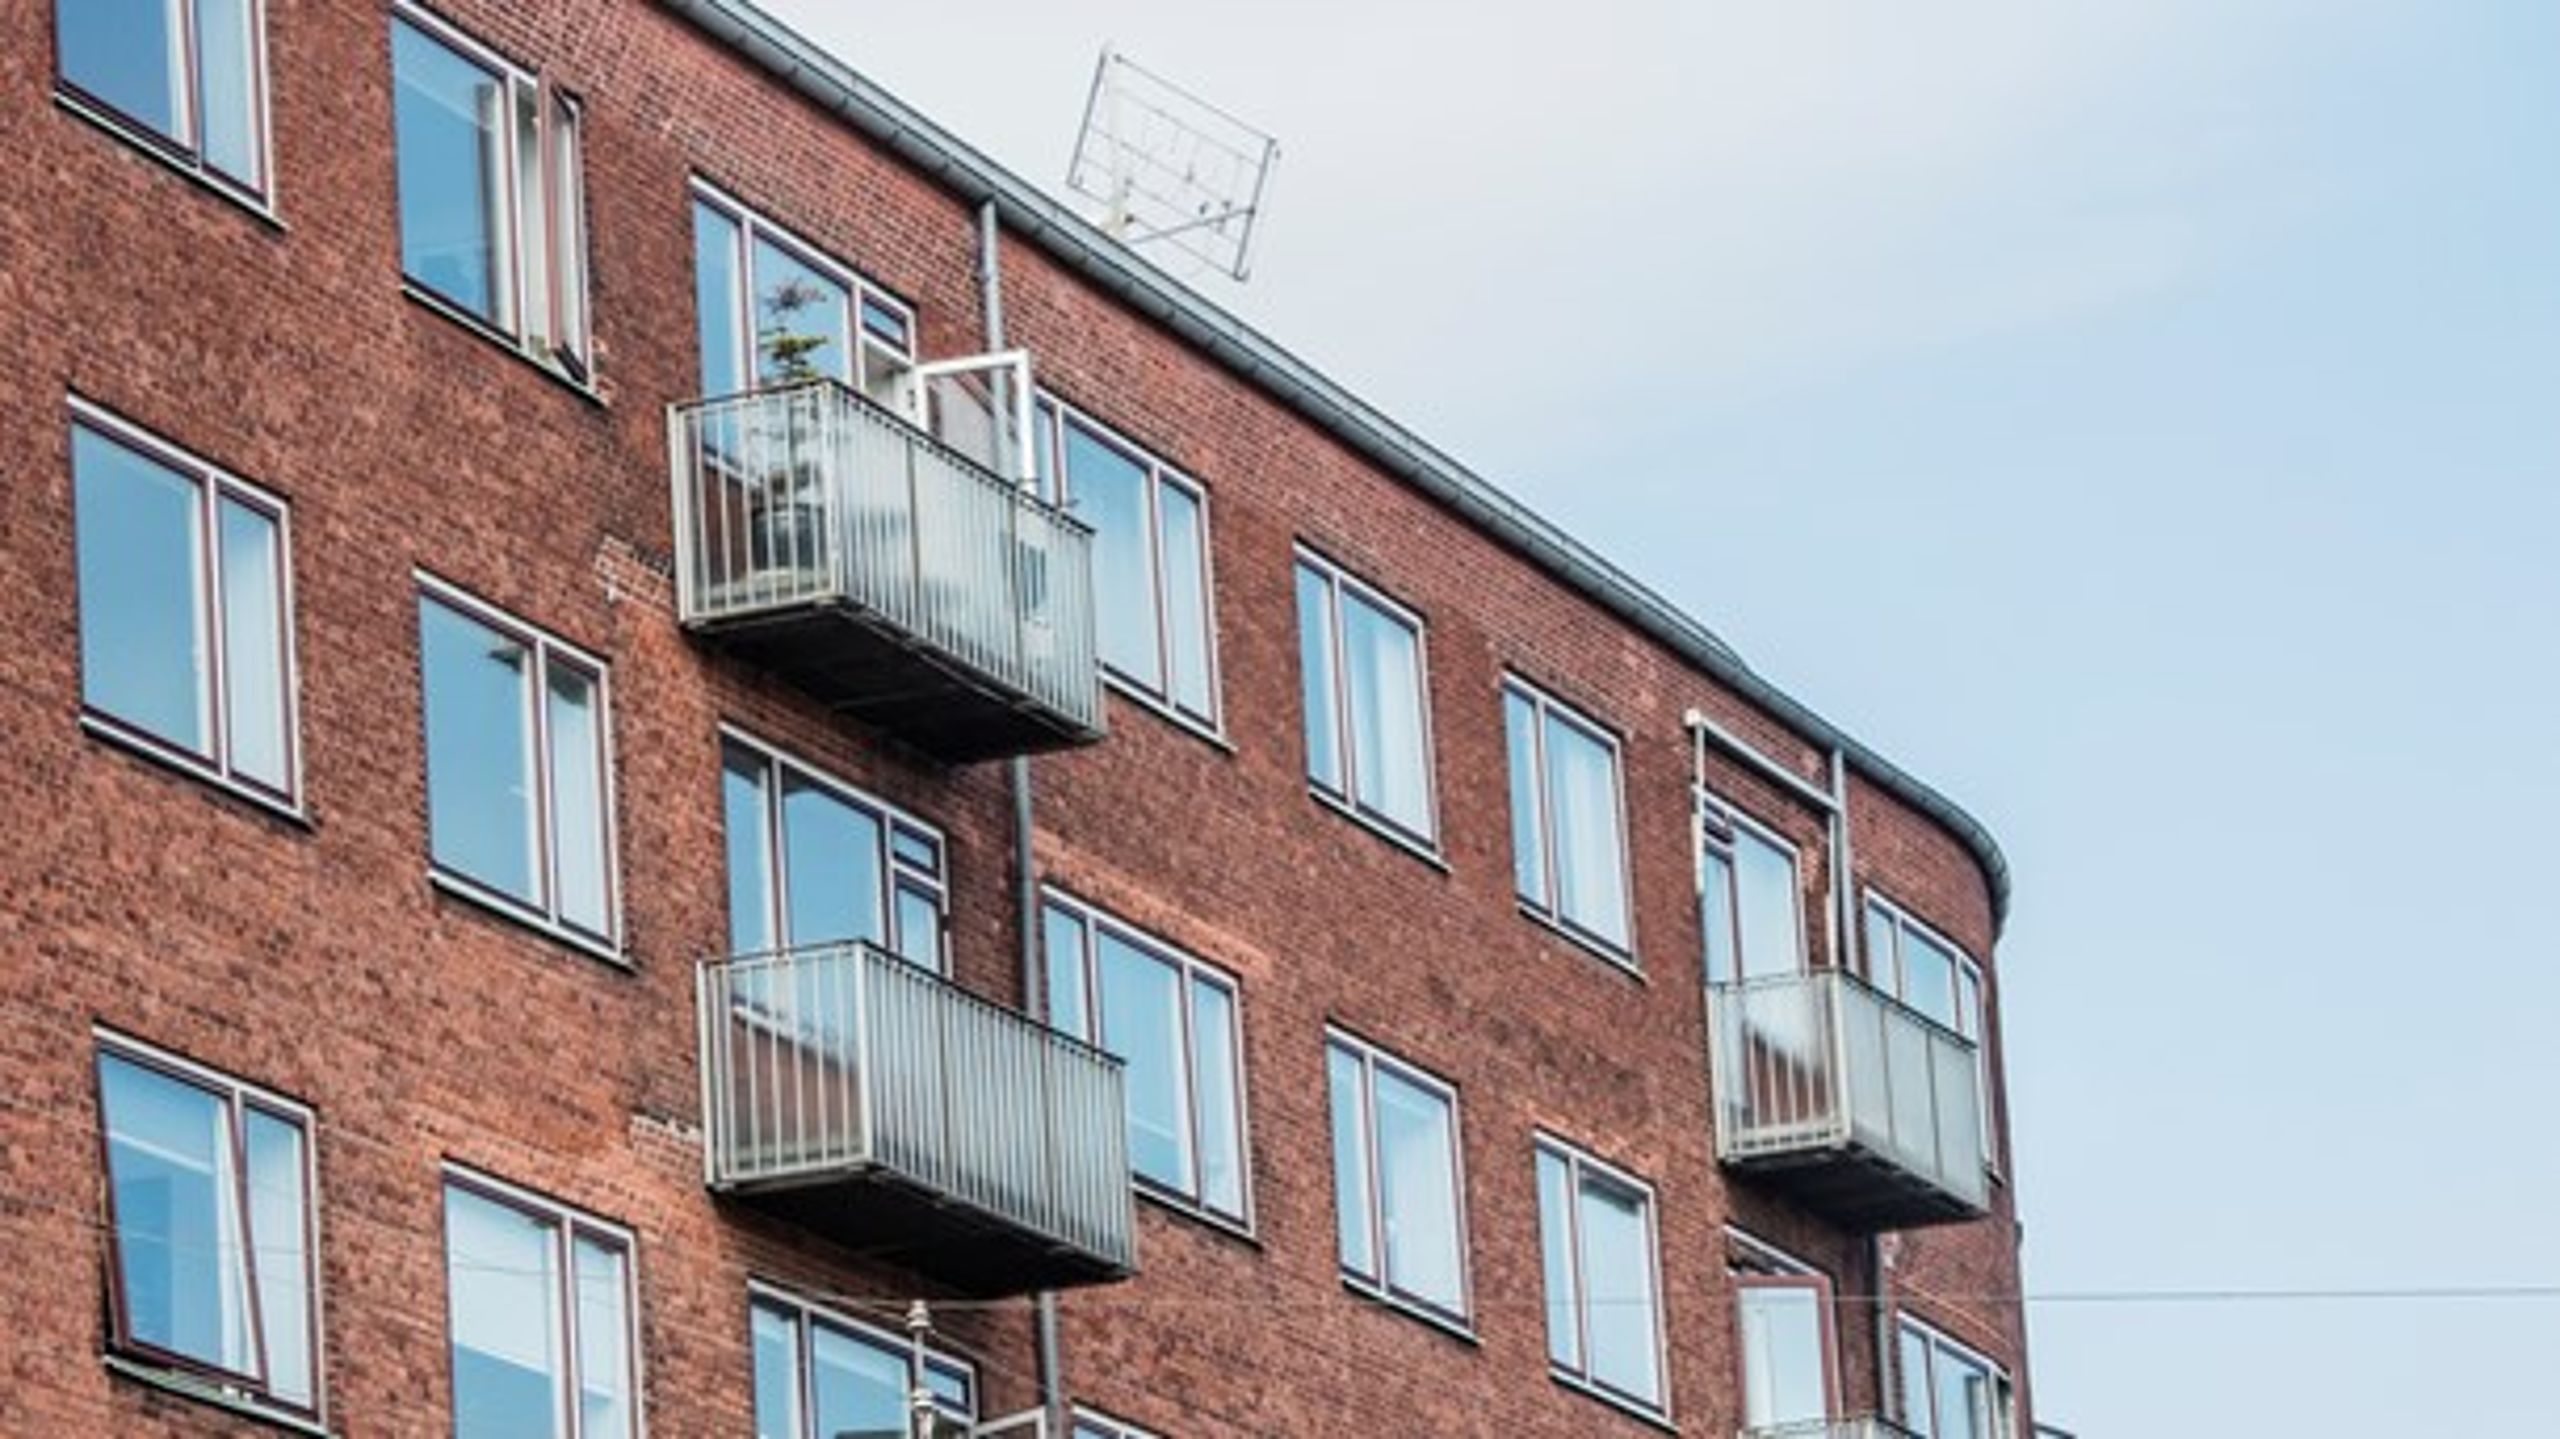 Selvom det er positivt med nytænkning af boligmarkedet, mener ABF ikke, at medejerboligen er den bedste løsning til at sikre billige boliger, skriver landsformand Hans Erik Lund.